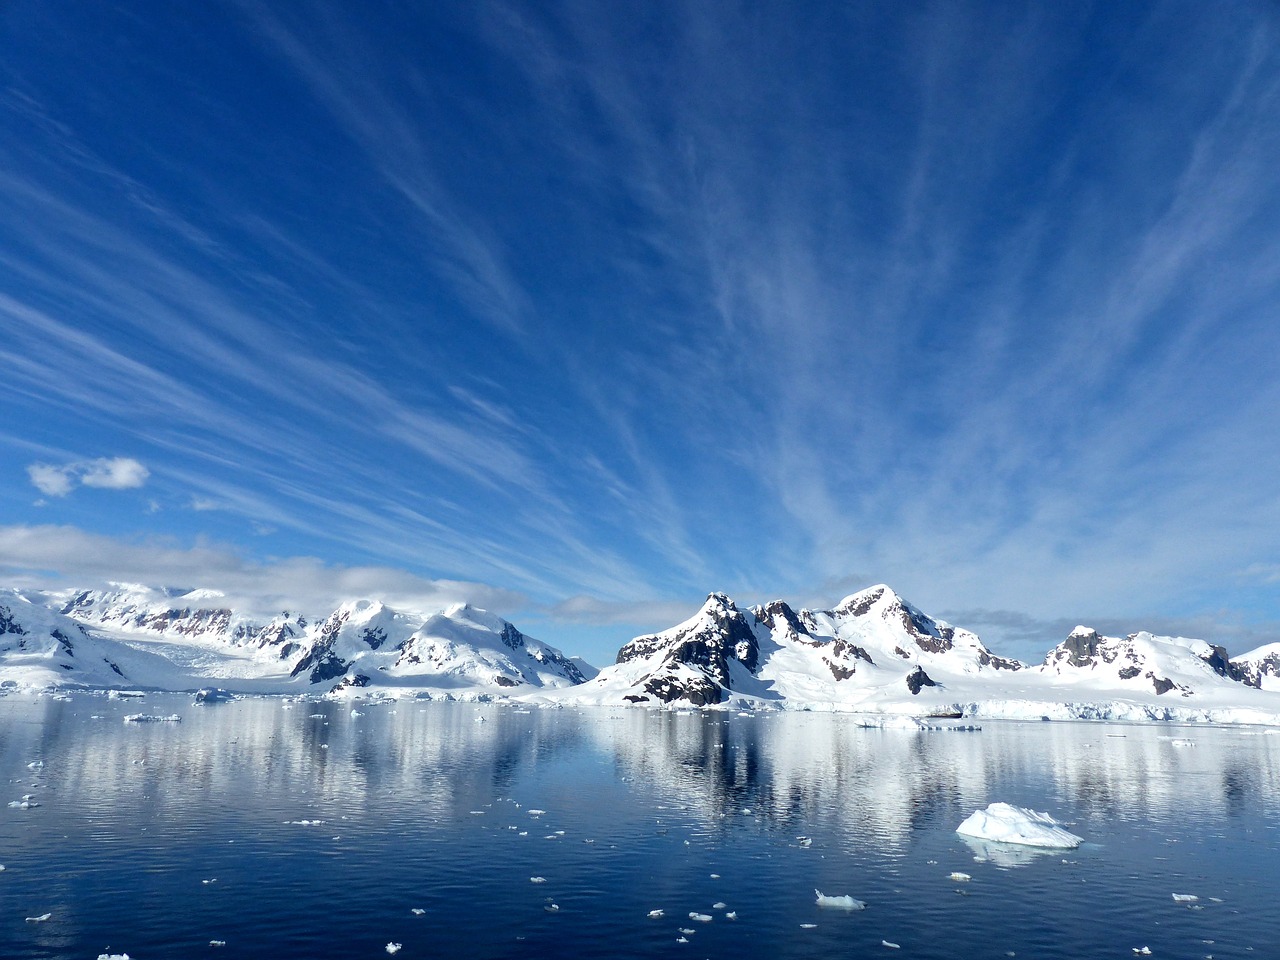  L’Antarctique, dernier continent resté indemne, est maintenant touché par la pandémie